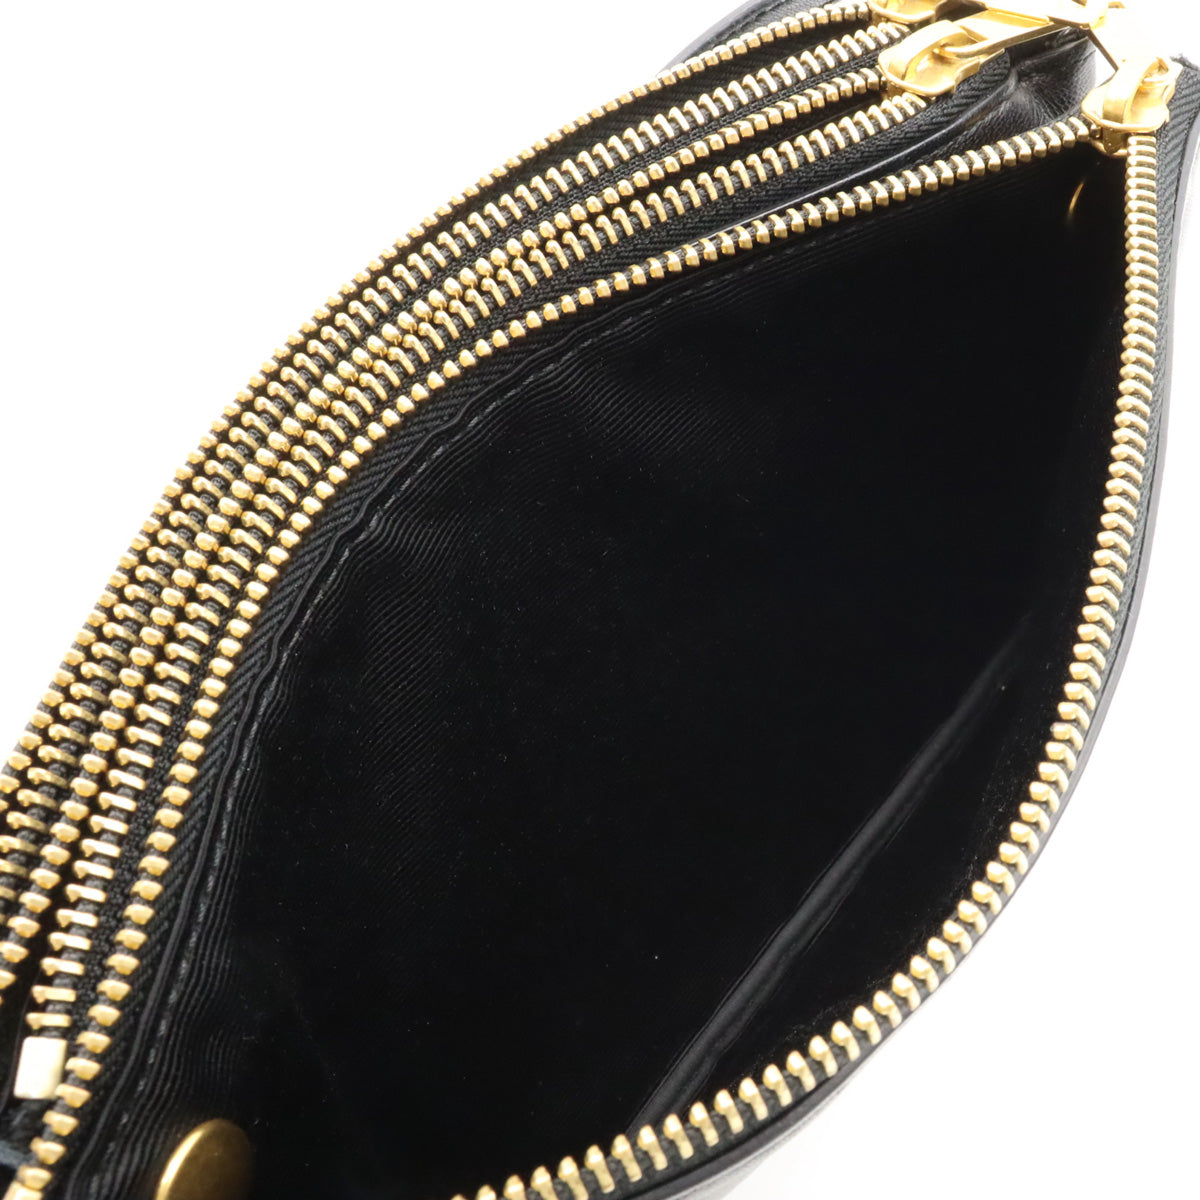 Celine Trio Small Shoulder Bag  Pulled  Ramskin Leather Black Black Gold  192033